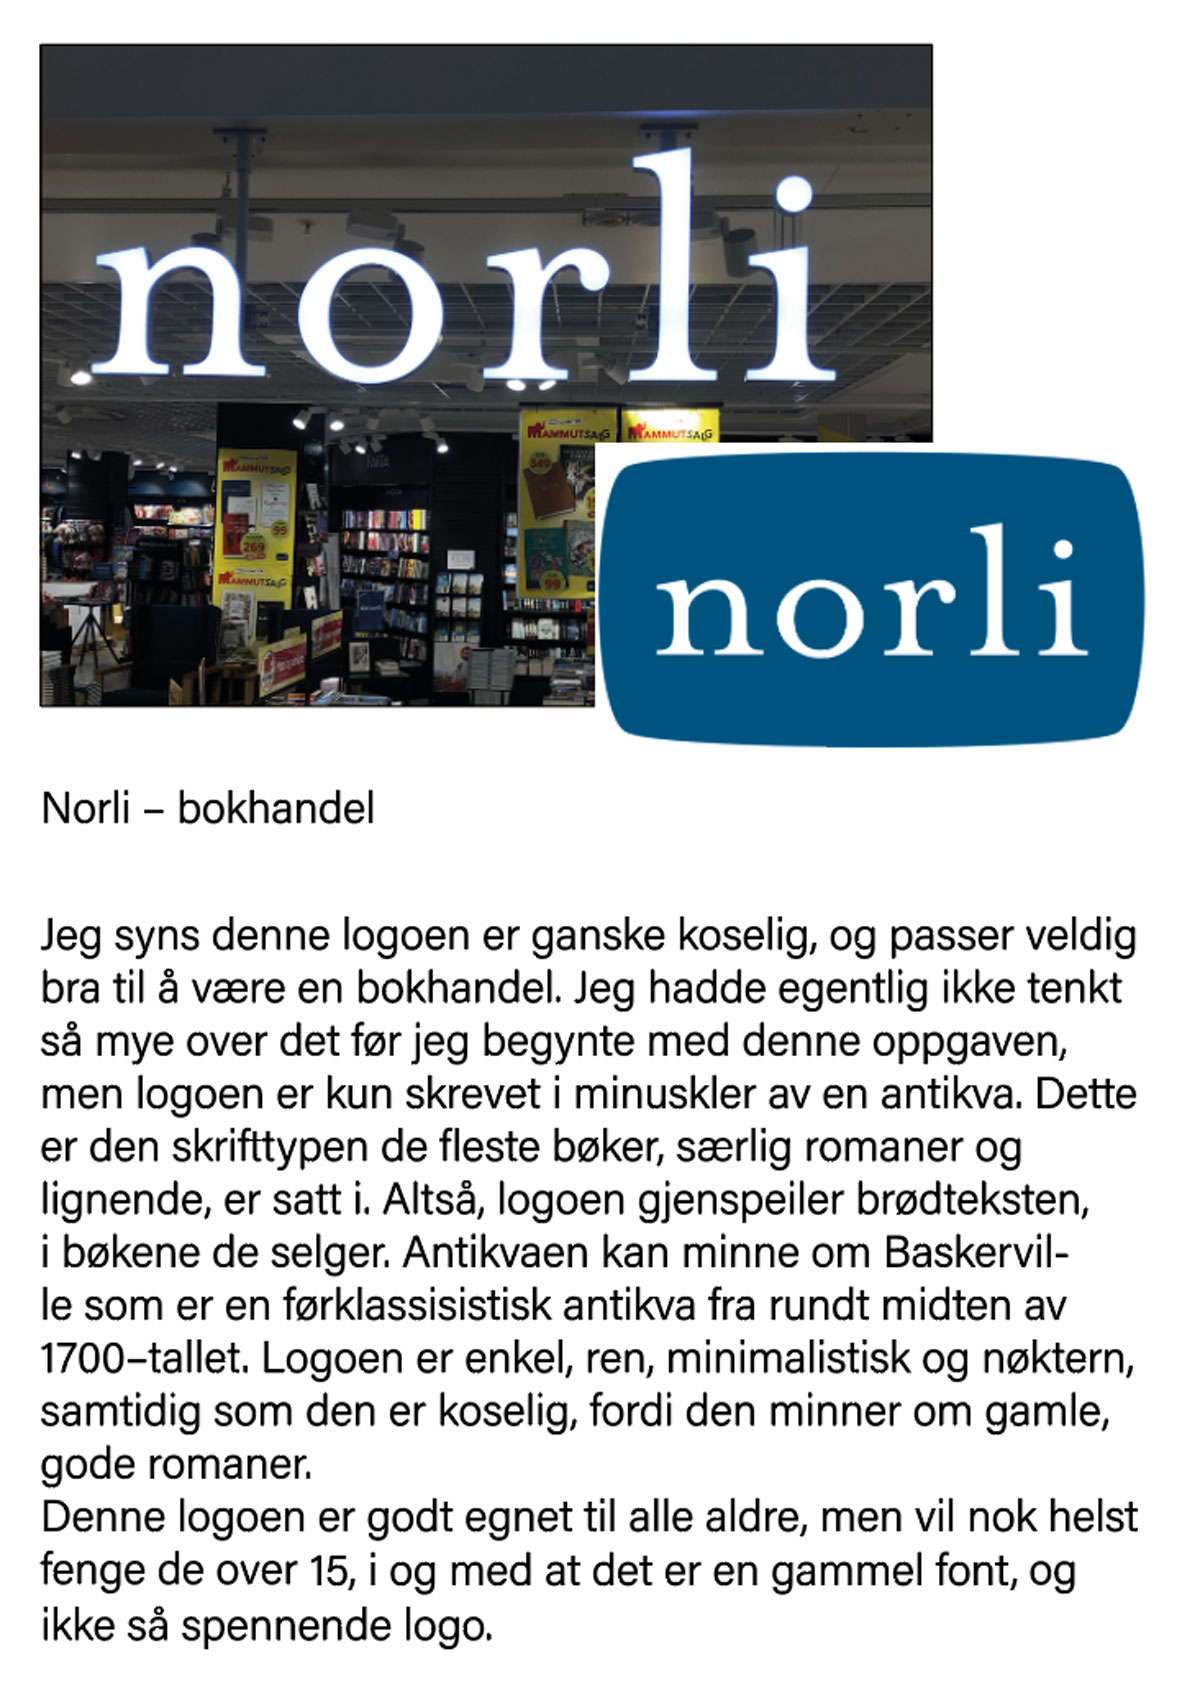 Min beskrivelse av logoen til Norli